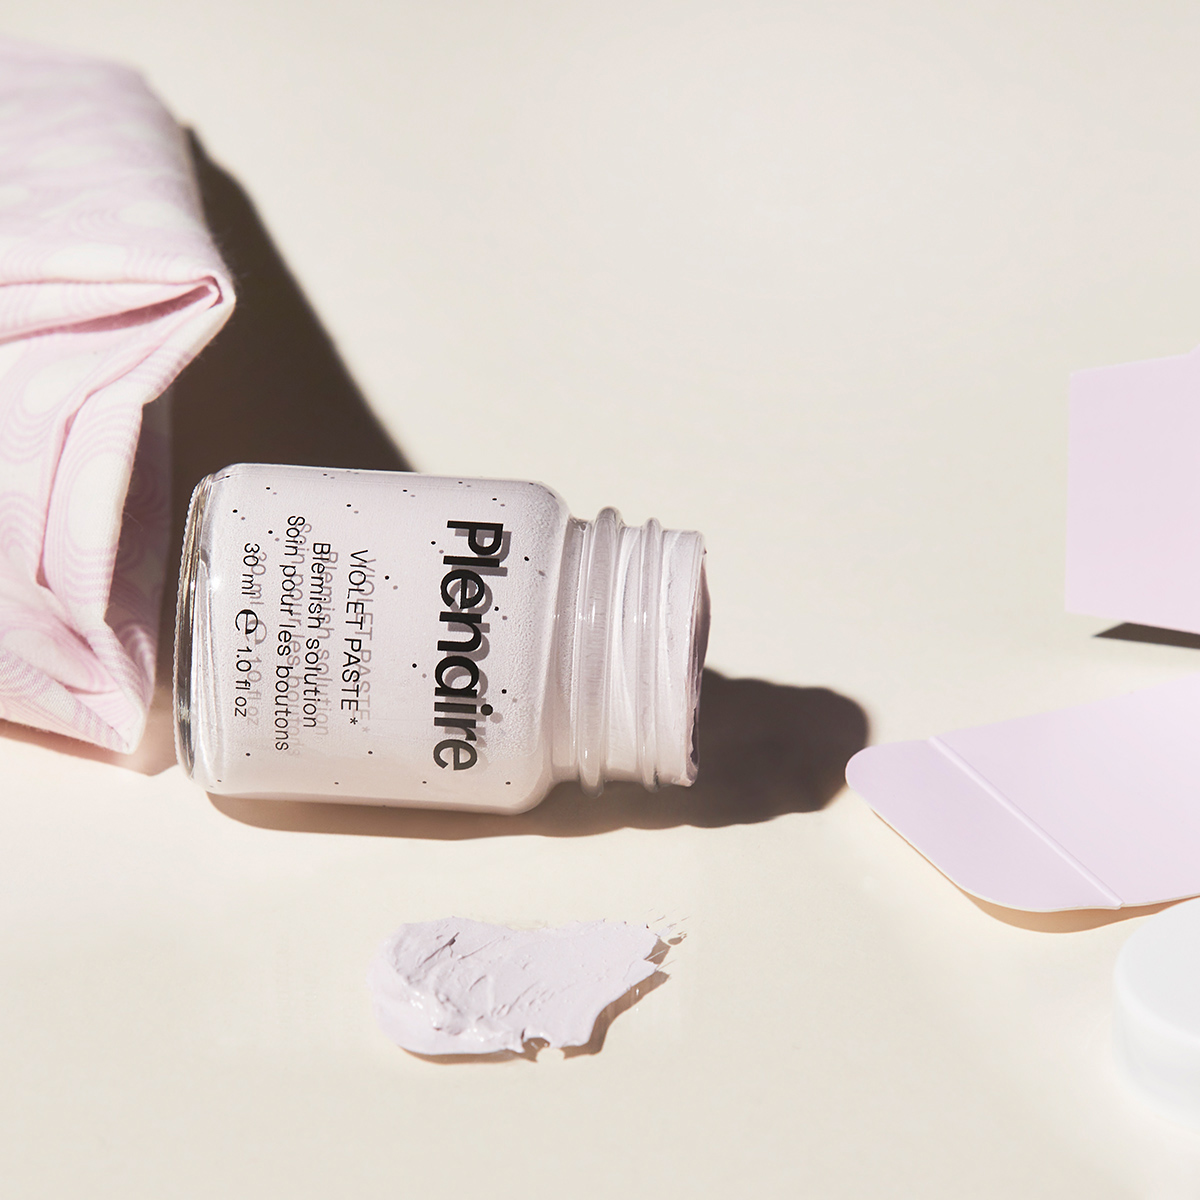 Plenaire - Violet Paste*Overnight Blemish Treatment